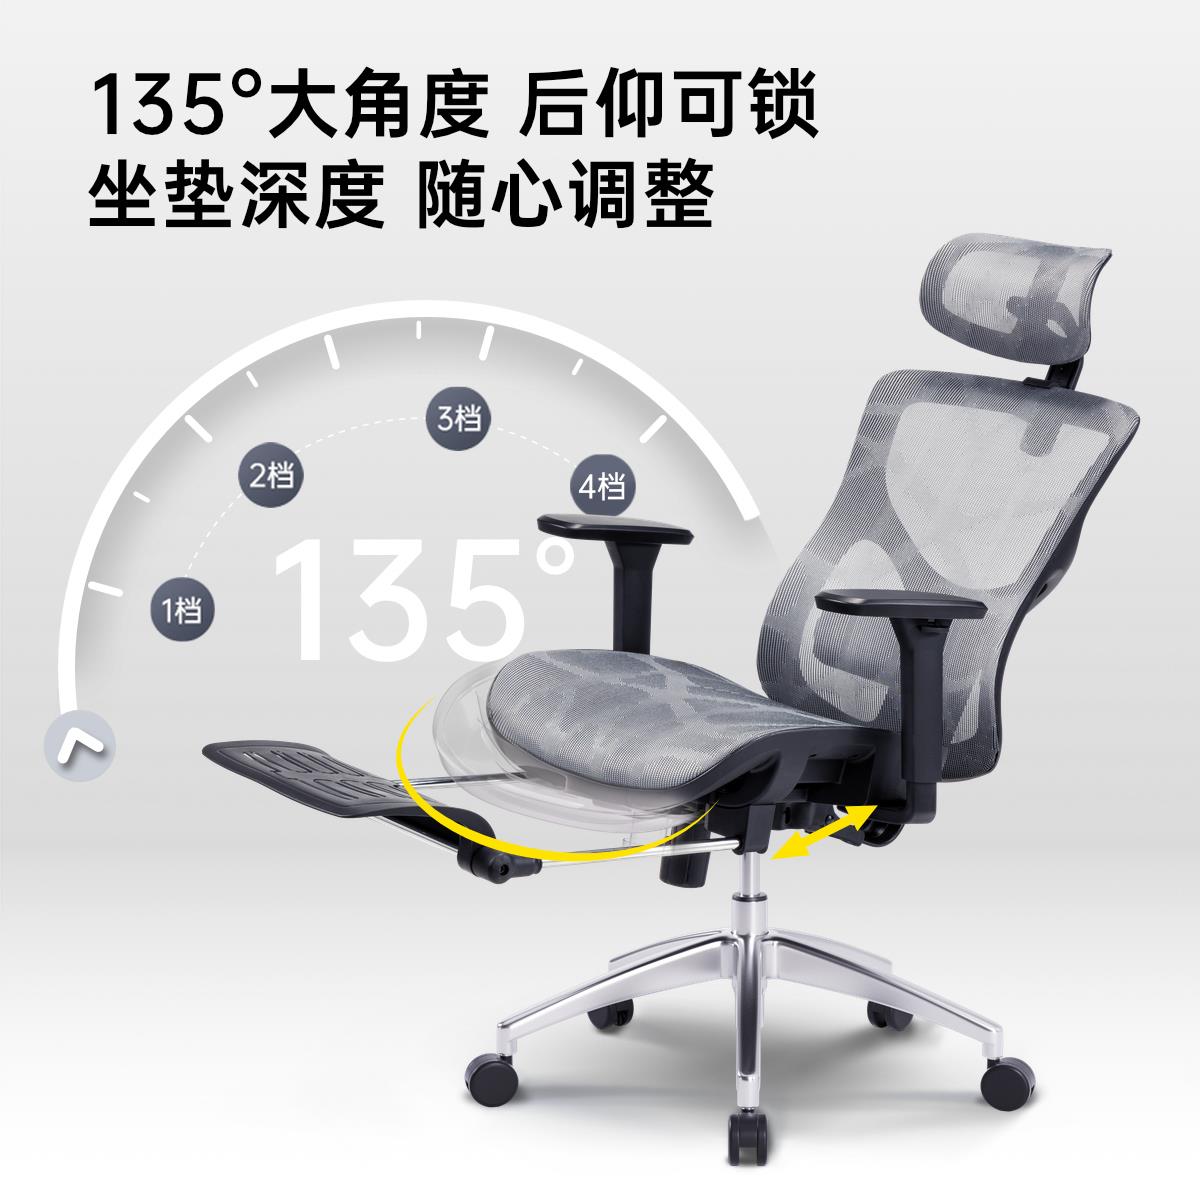 1606办公椅电脑椅人体工学椅舒适久坐电竞椅靠背座椅椅子护腰-图2